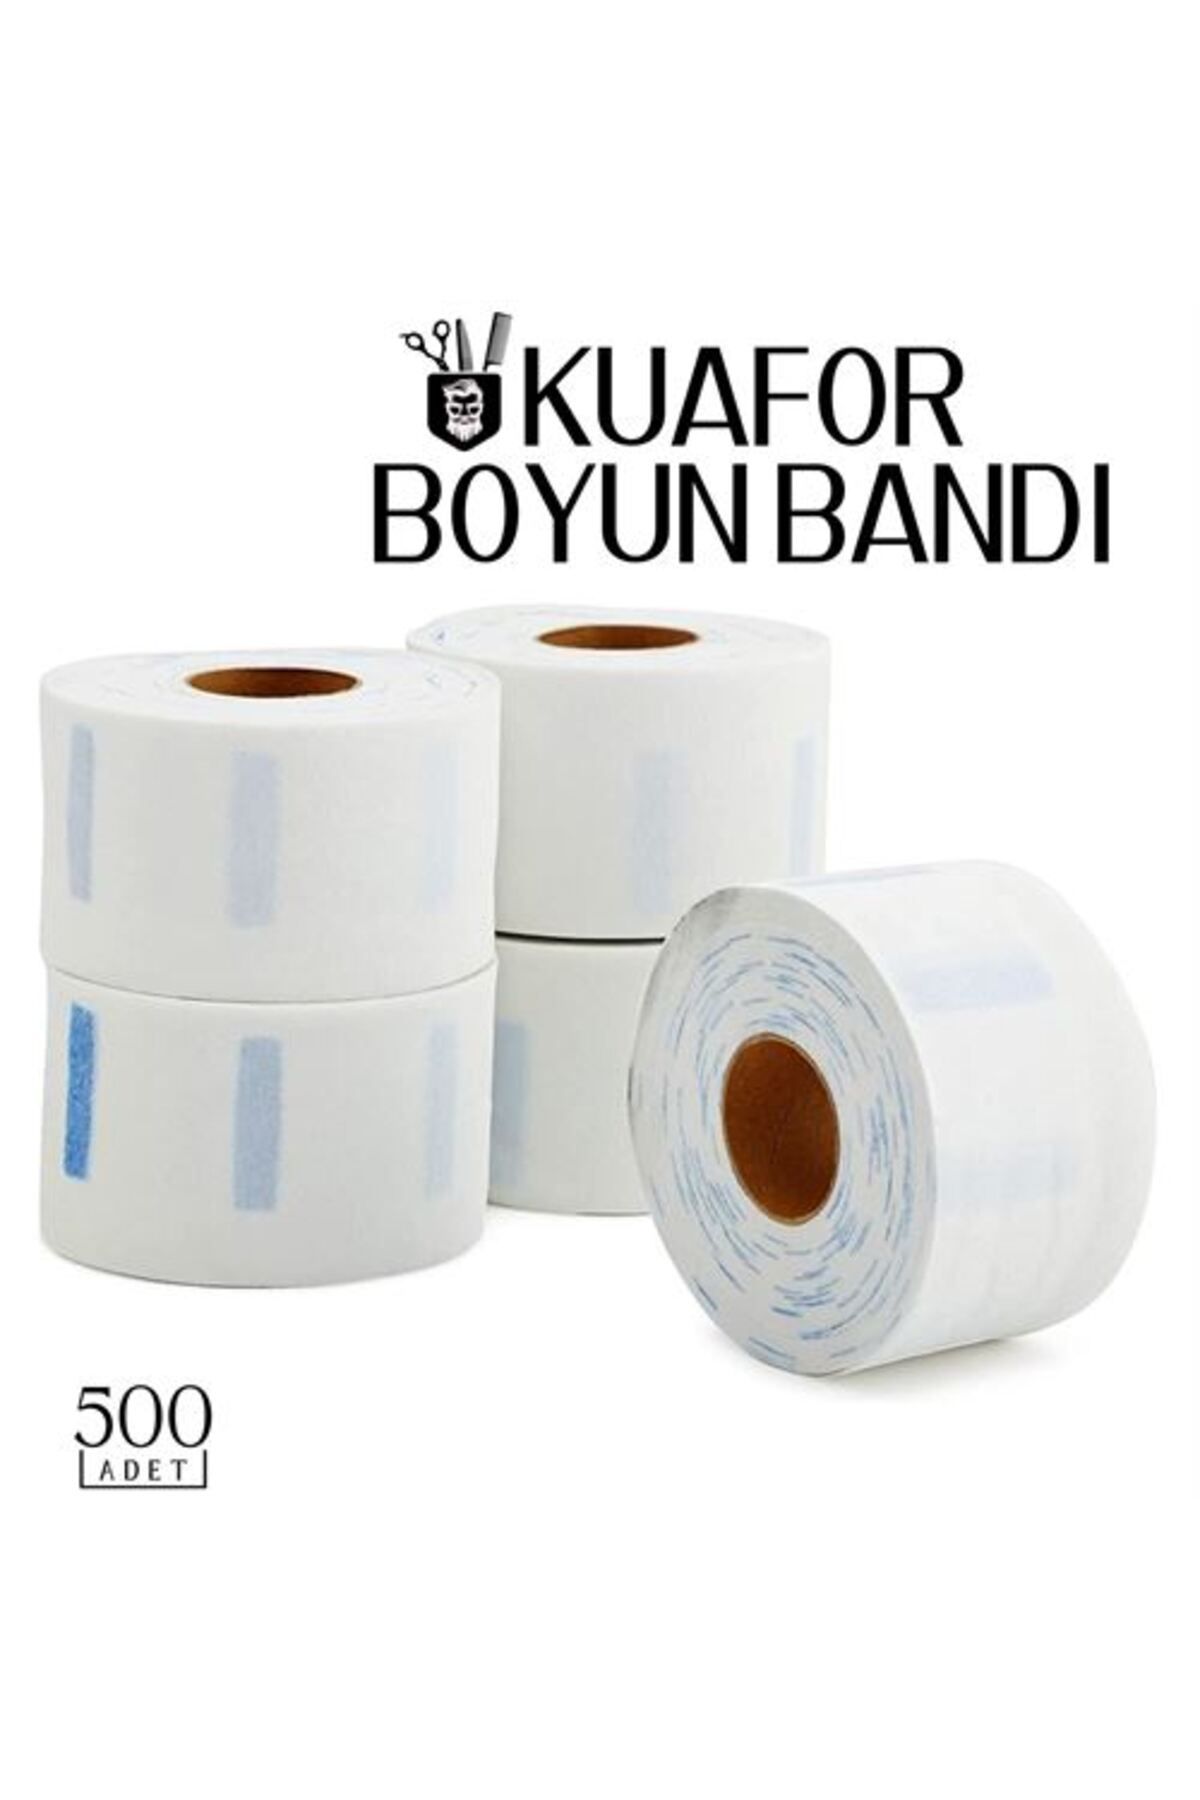 MENBOX Kuaför Tıraş Boyun Bandı 500 Adet 718442